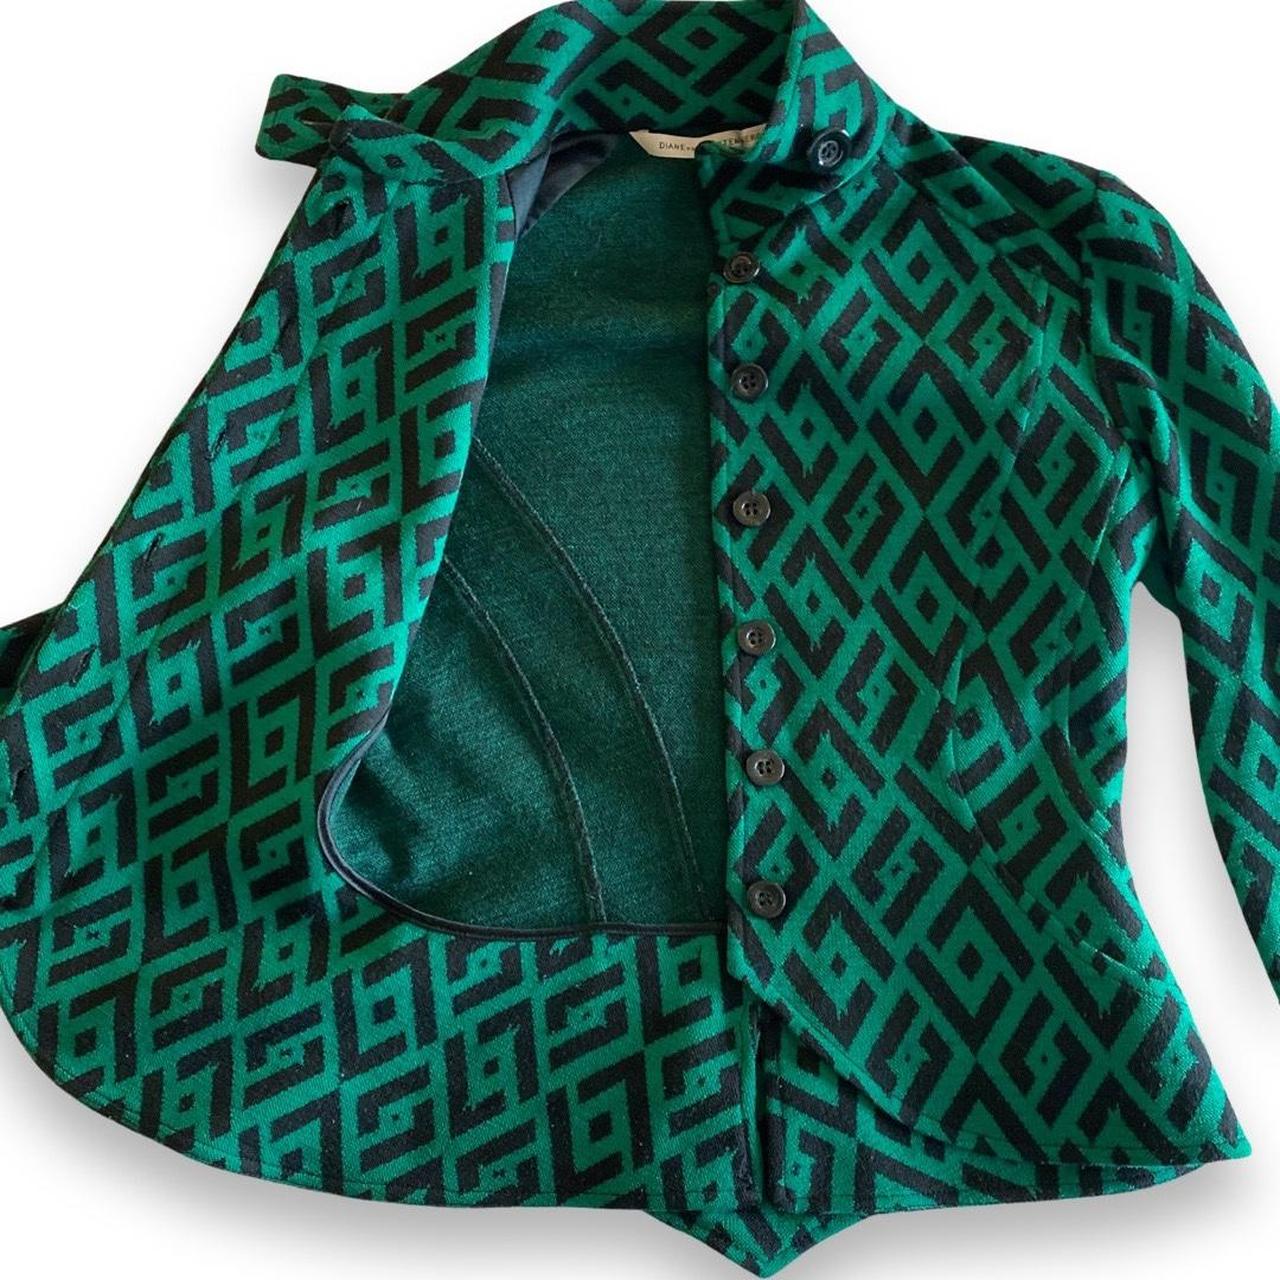 Diane von Furstenberg Women's Green and Black Jacket (2)